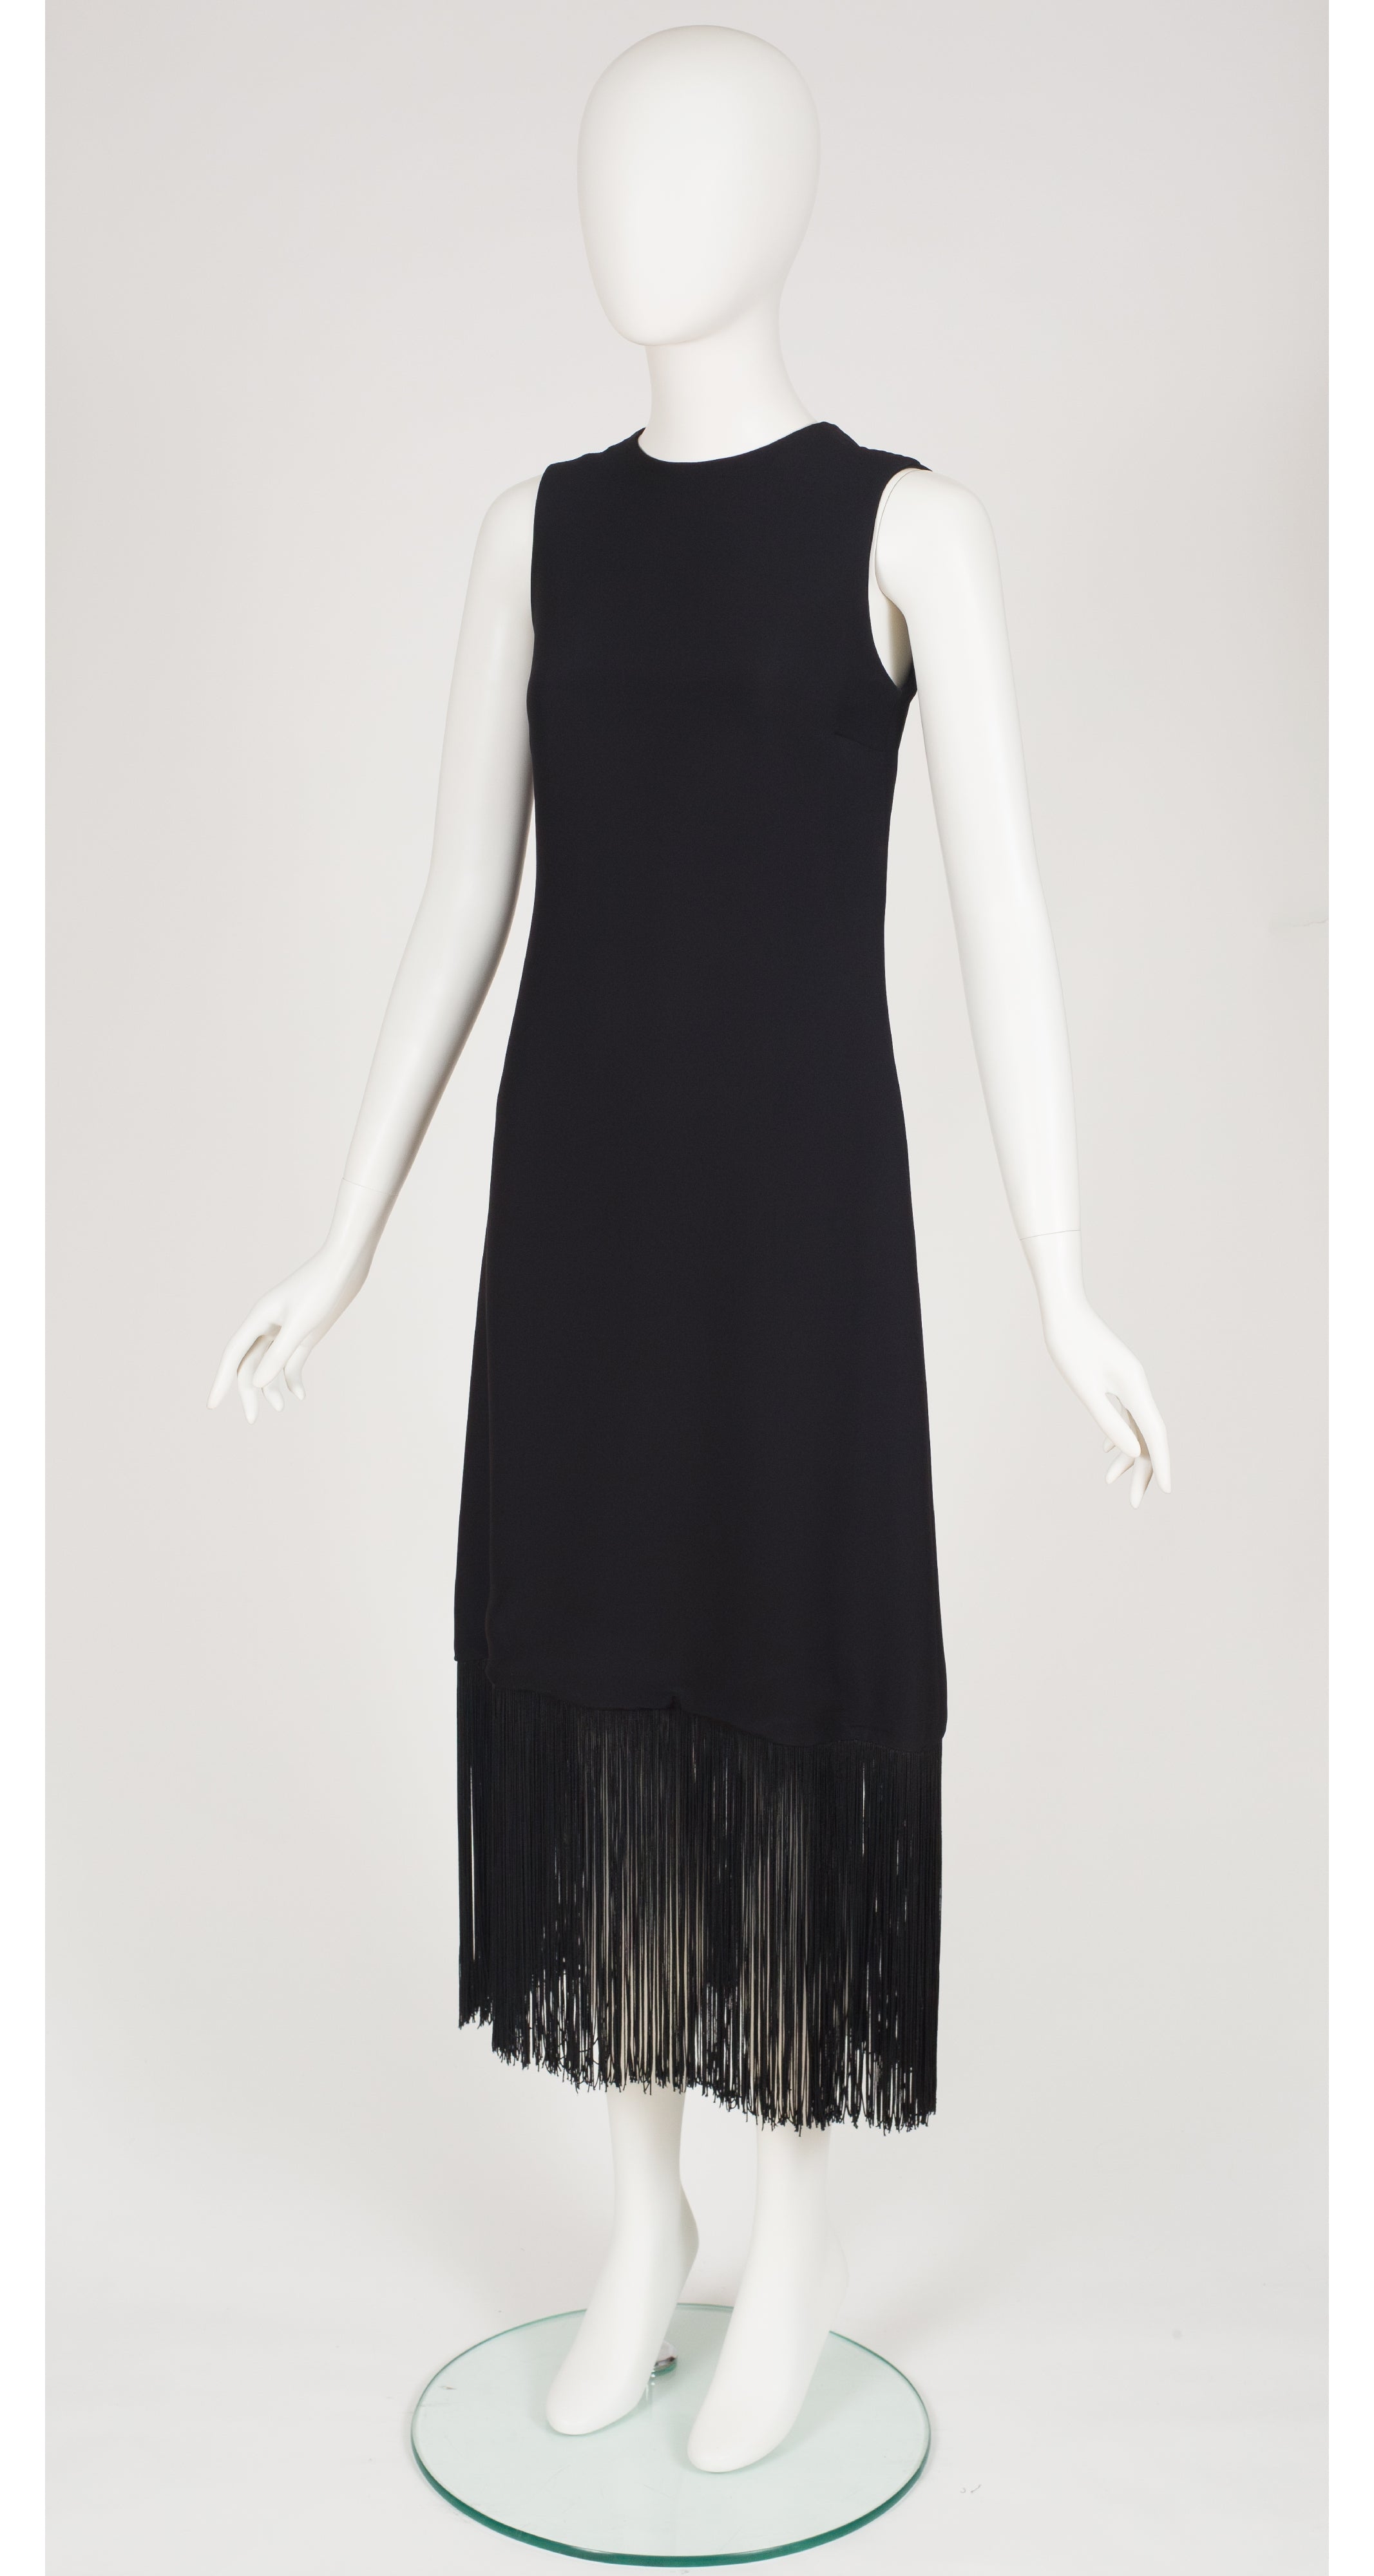 1960s Black Crepe & Fringe Evening Dress